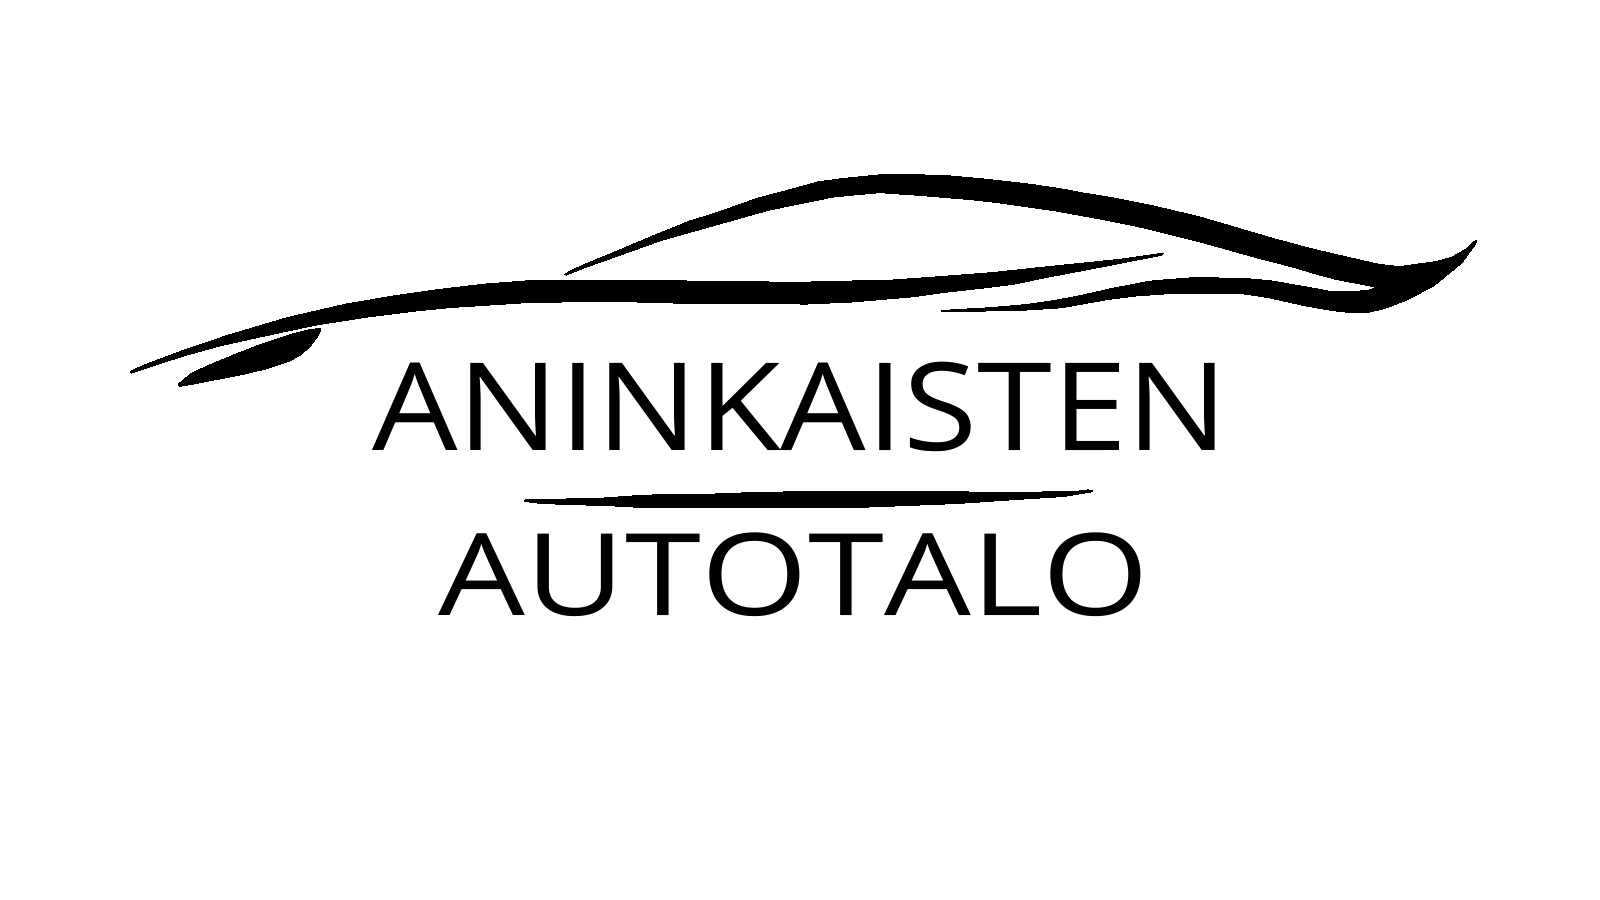 Aninkaisten autotalo logo